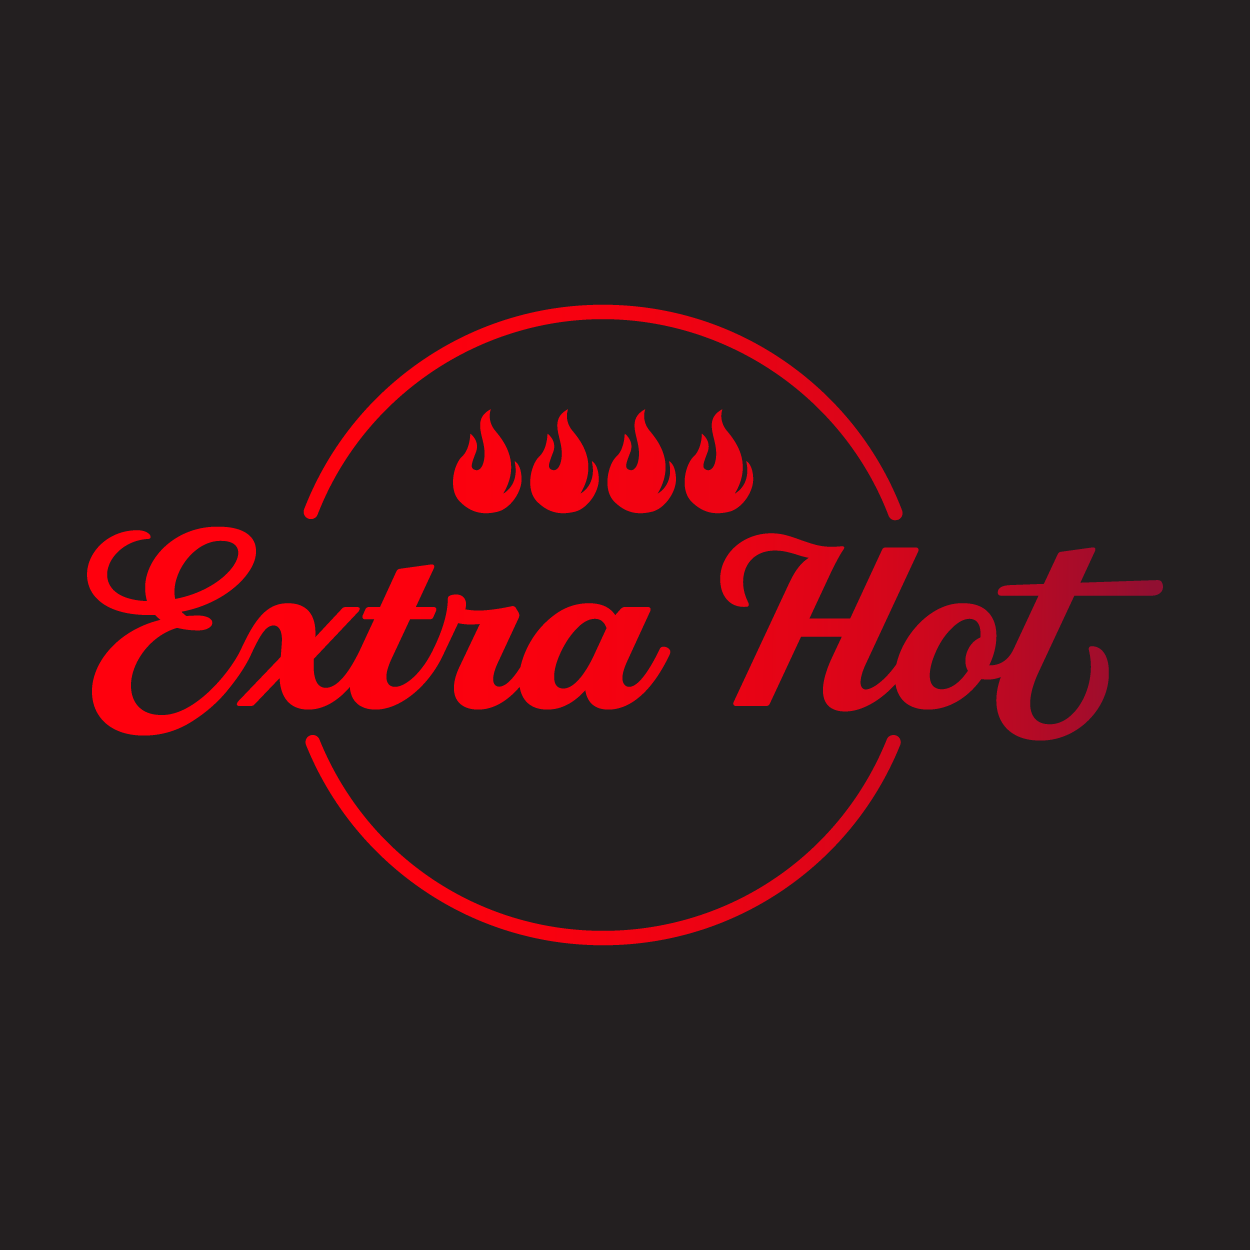 Extra Hot